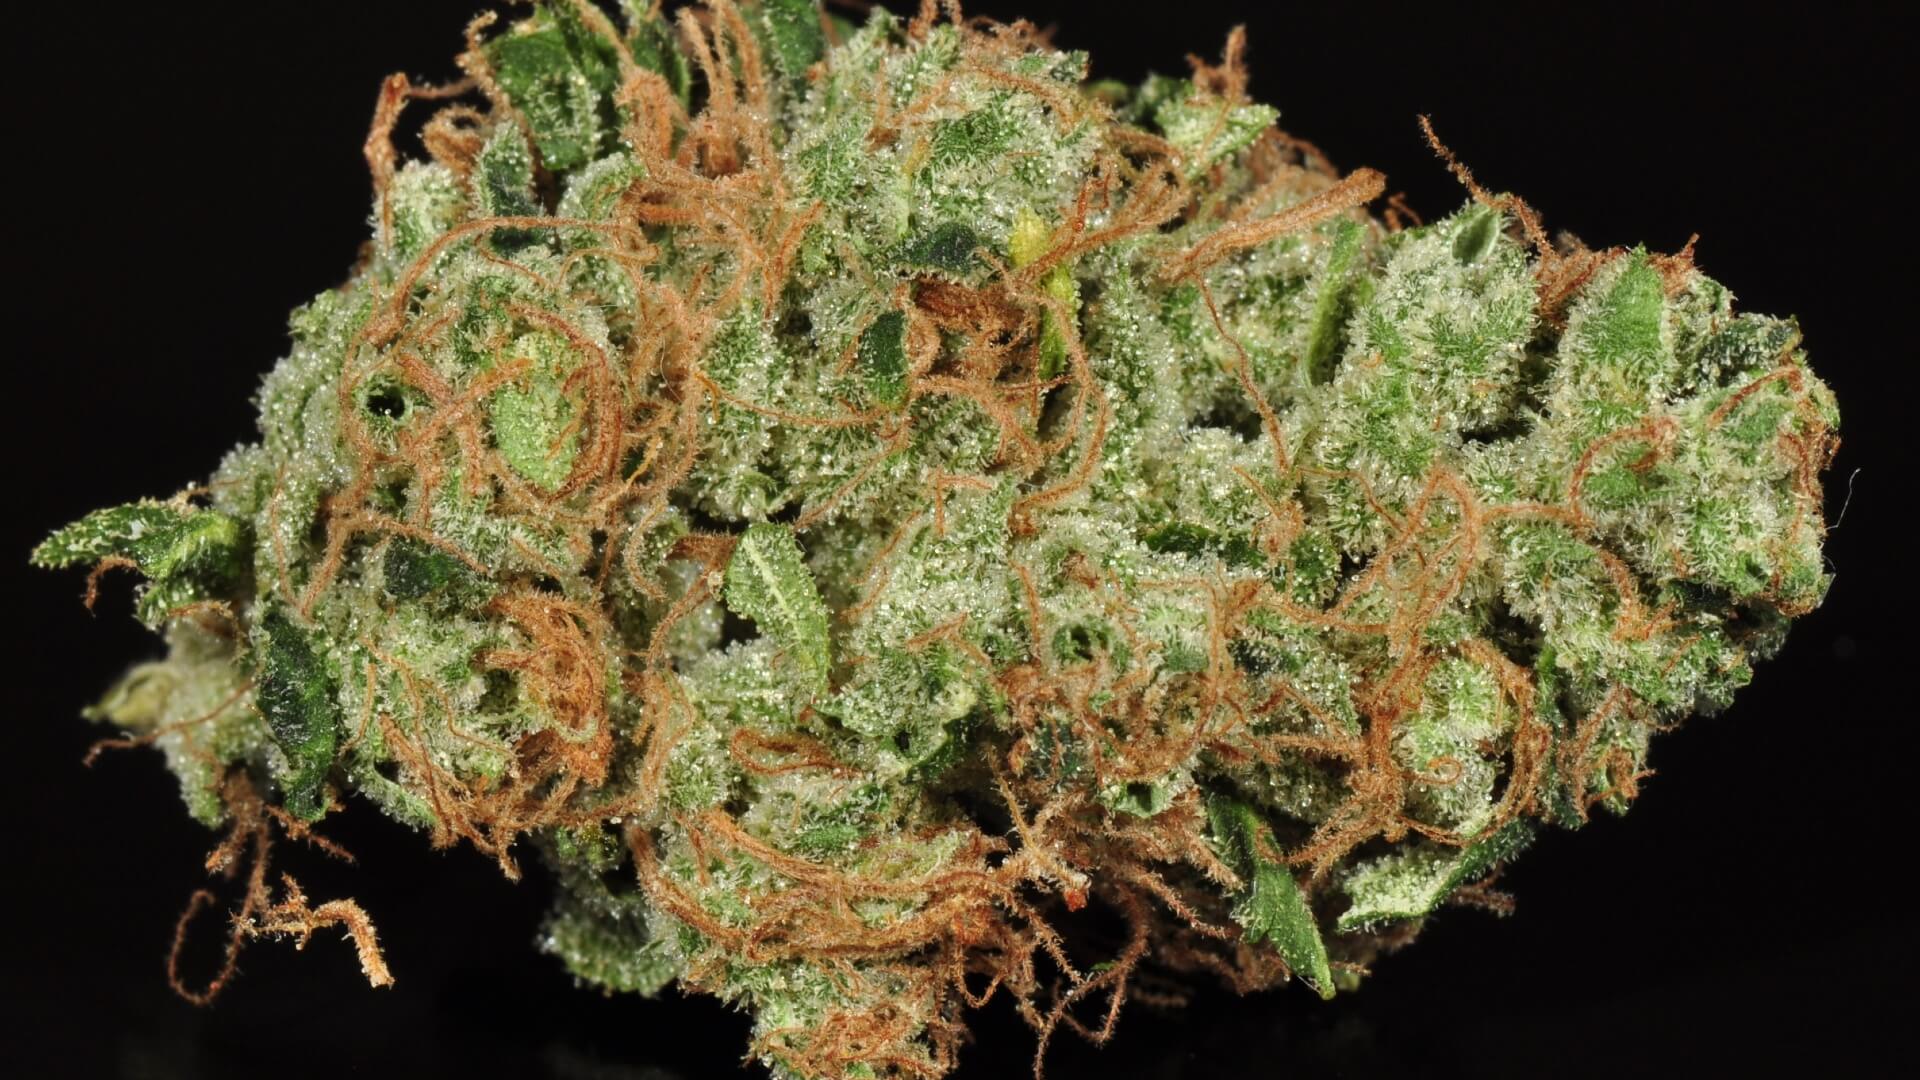 nug of Sour Diesel cannabis